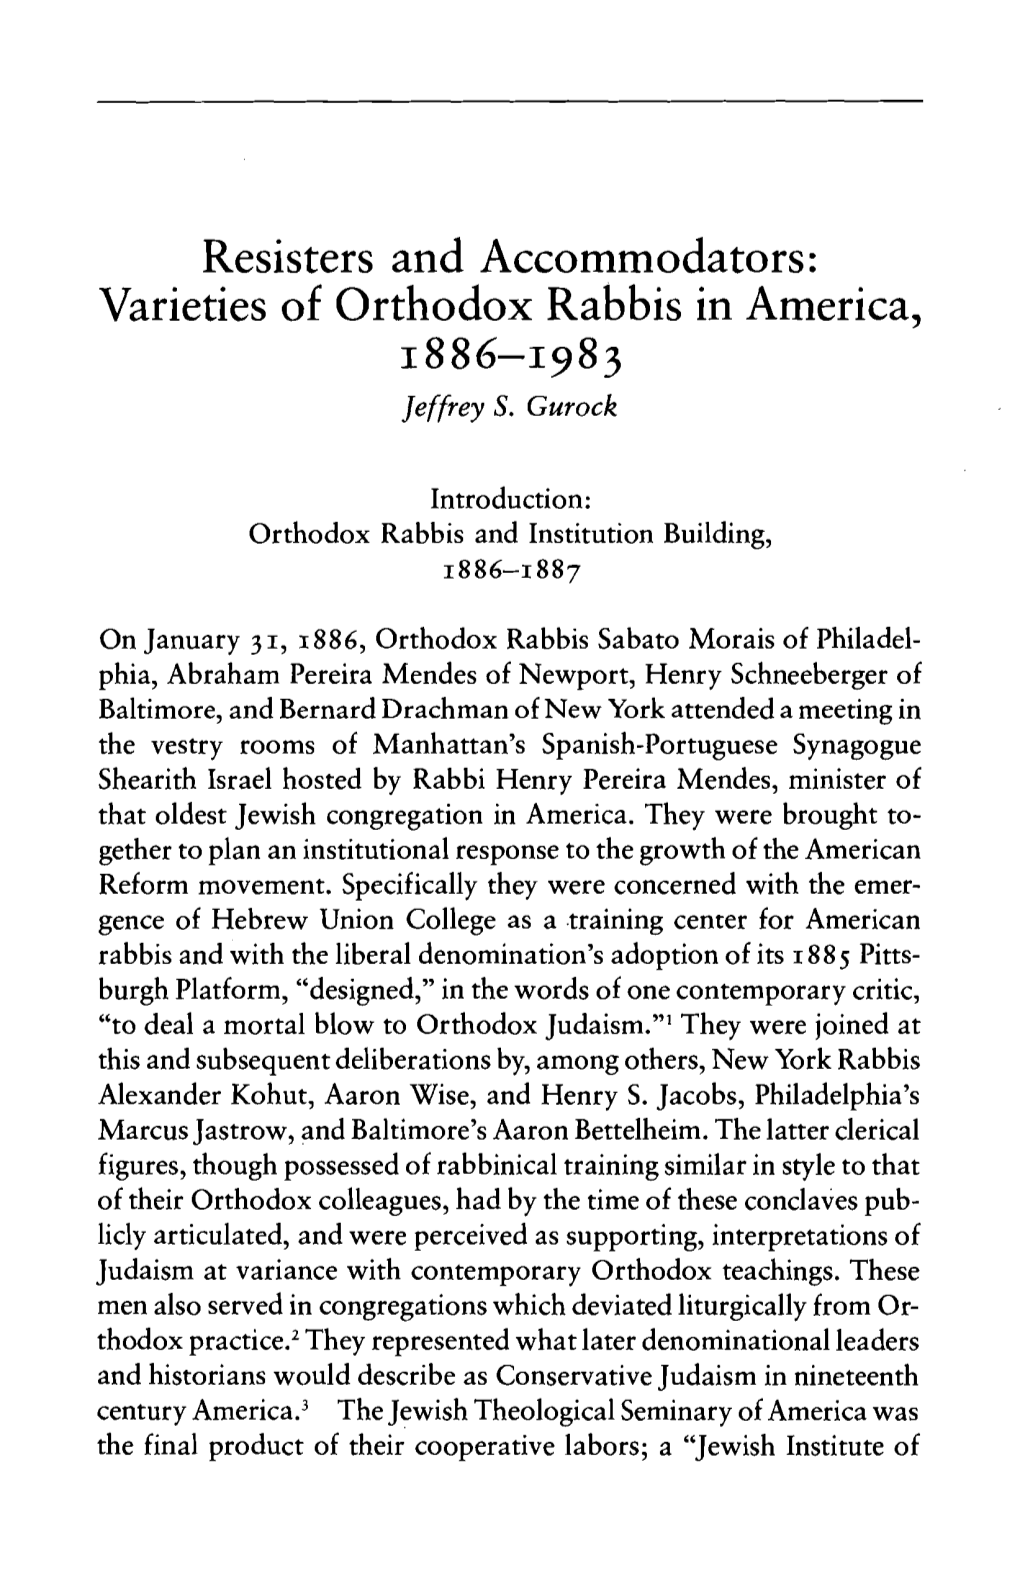 Resisters and Accommodators: Varieties of Orthodox Rabbis in America, 1886-1983 Jeffrey S